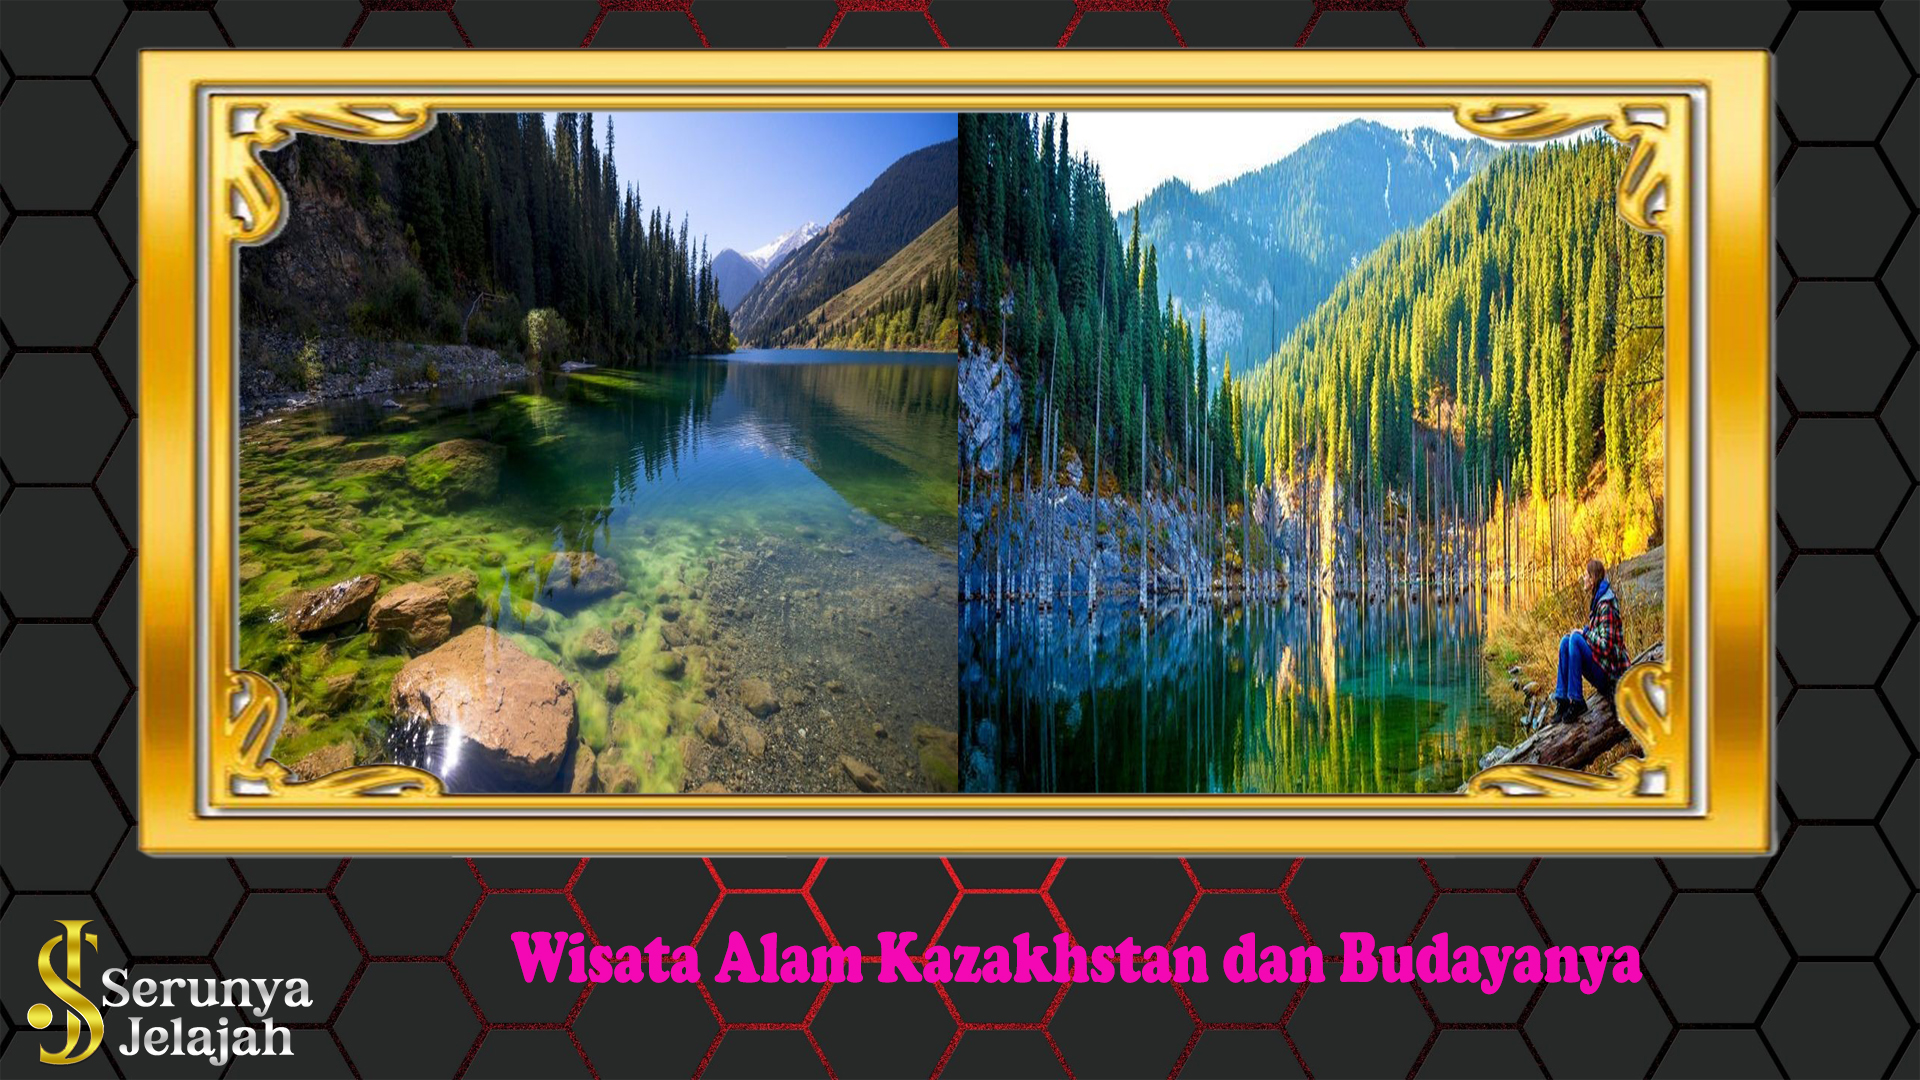 Wisata Alam Kazakhstan dan Budayanya